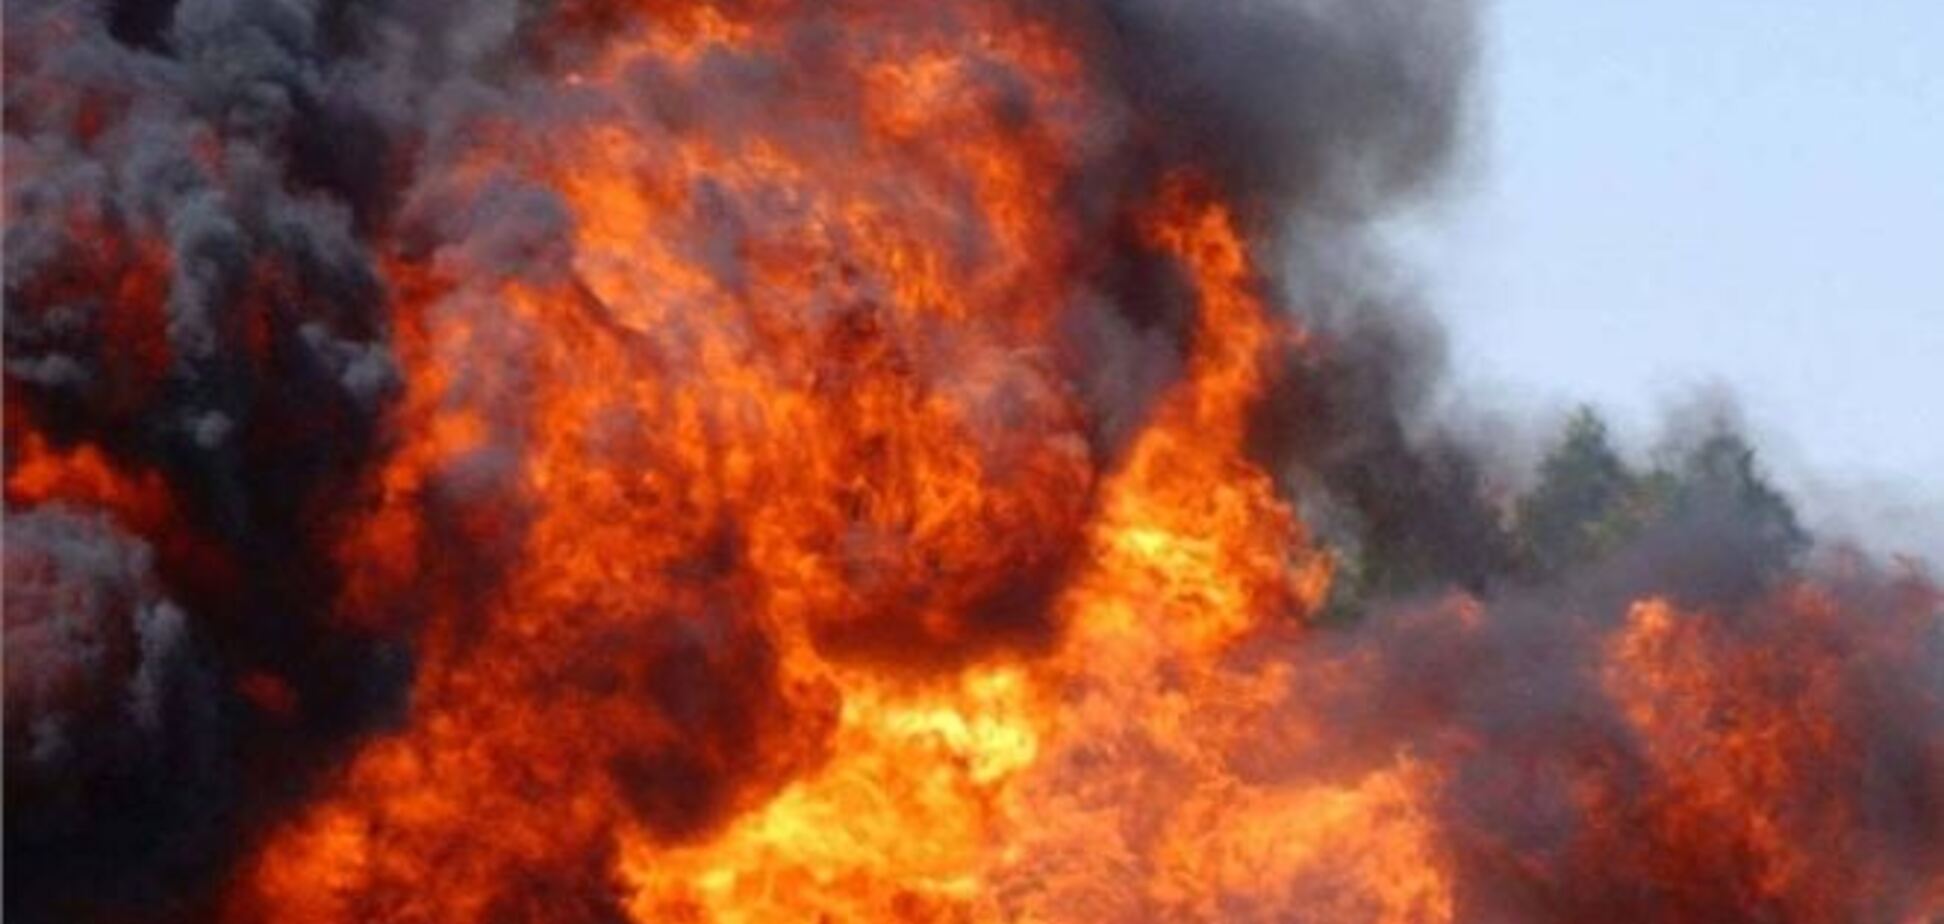 Українців немає серед постраждалих на пожежі в Петербурзі - МЗС України